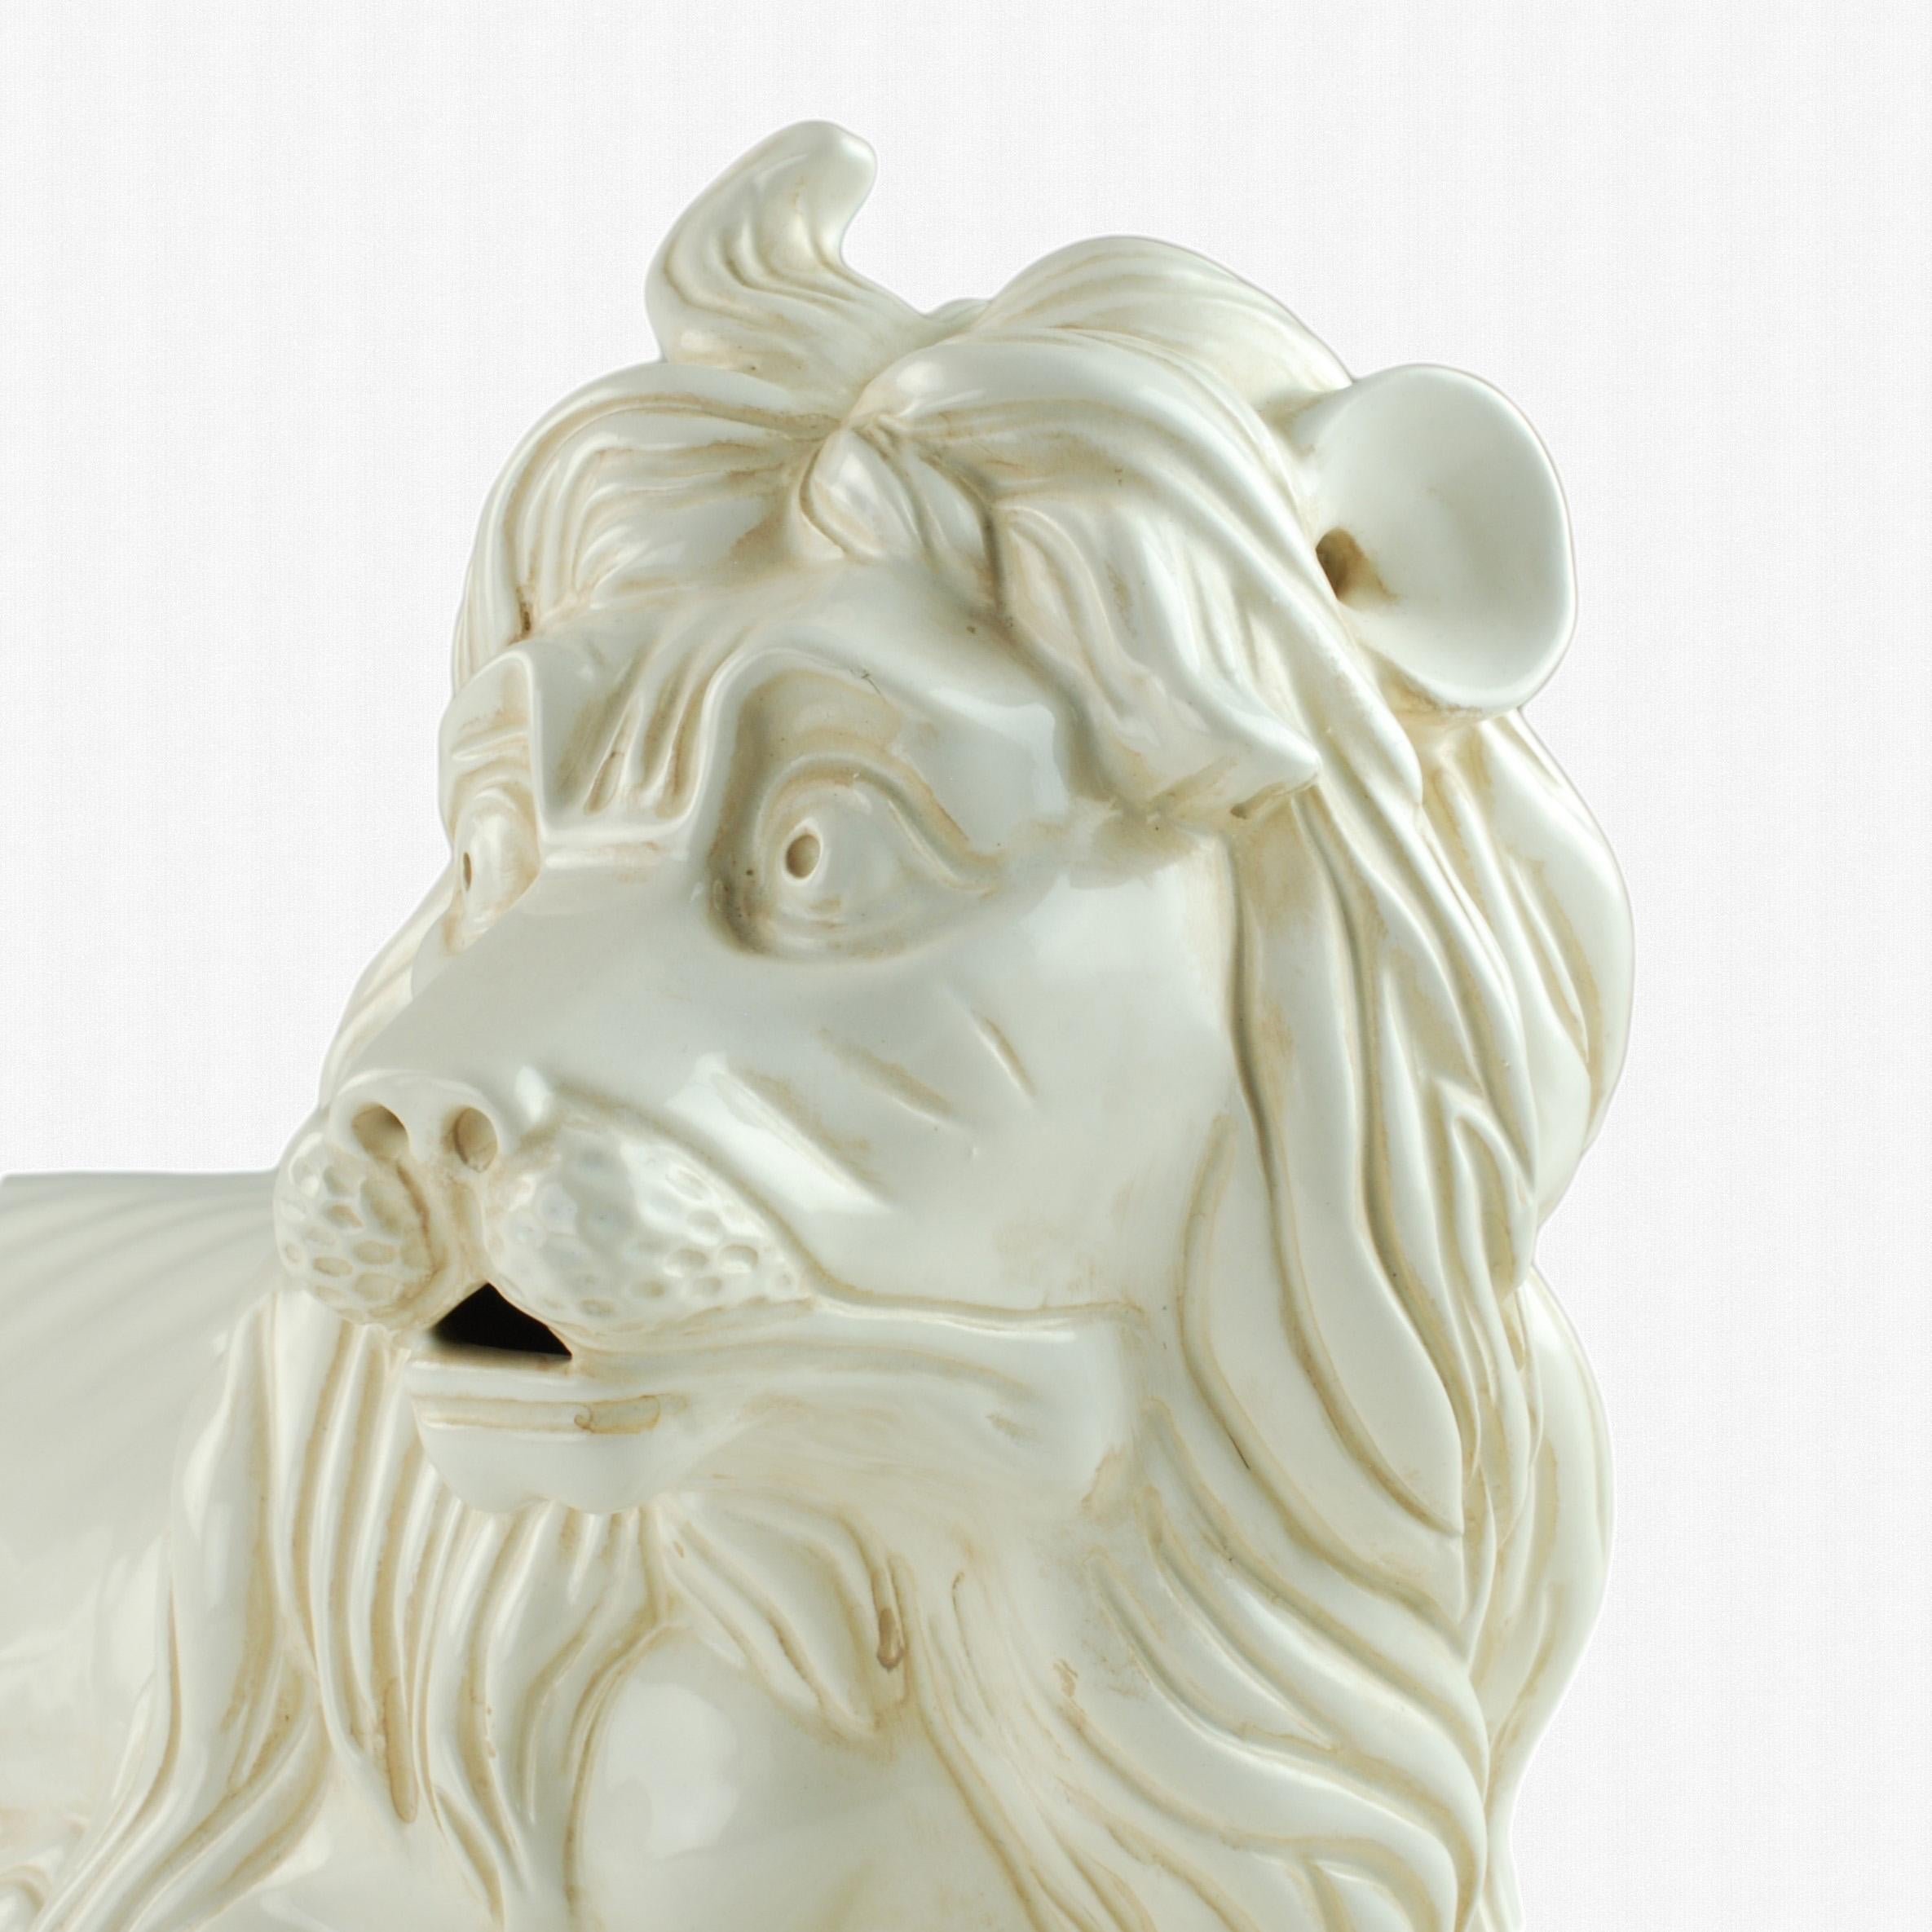 Diese große Majolika-Löwenfigur wurde von Porcelain de Cuernavaca für die Firma Mottahedeh hergestellt, die für ihre antiken Keramikreproduktionen und historischen Designs bekannt ist. Der Entwurf wurde ursprünglich im frühen 18. Jahrhundert vom